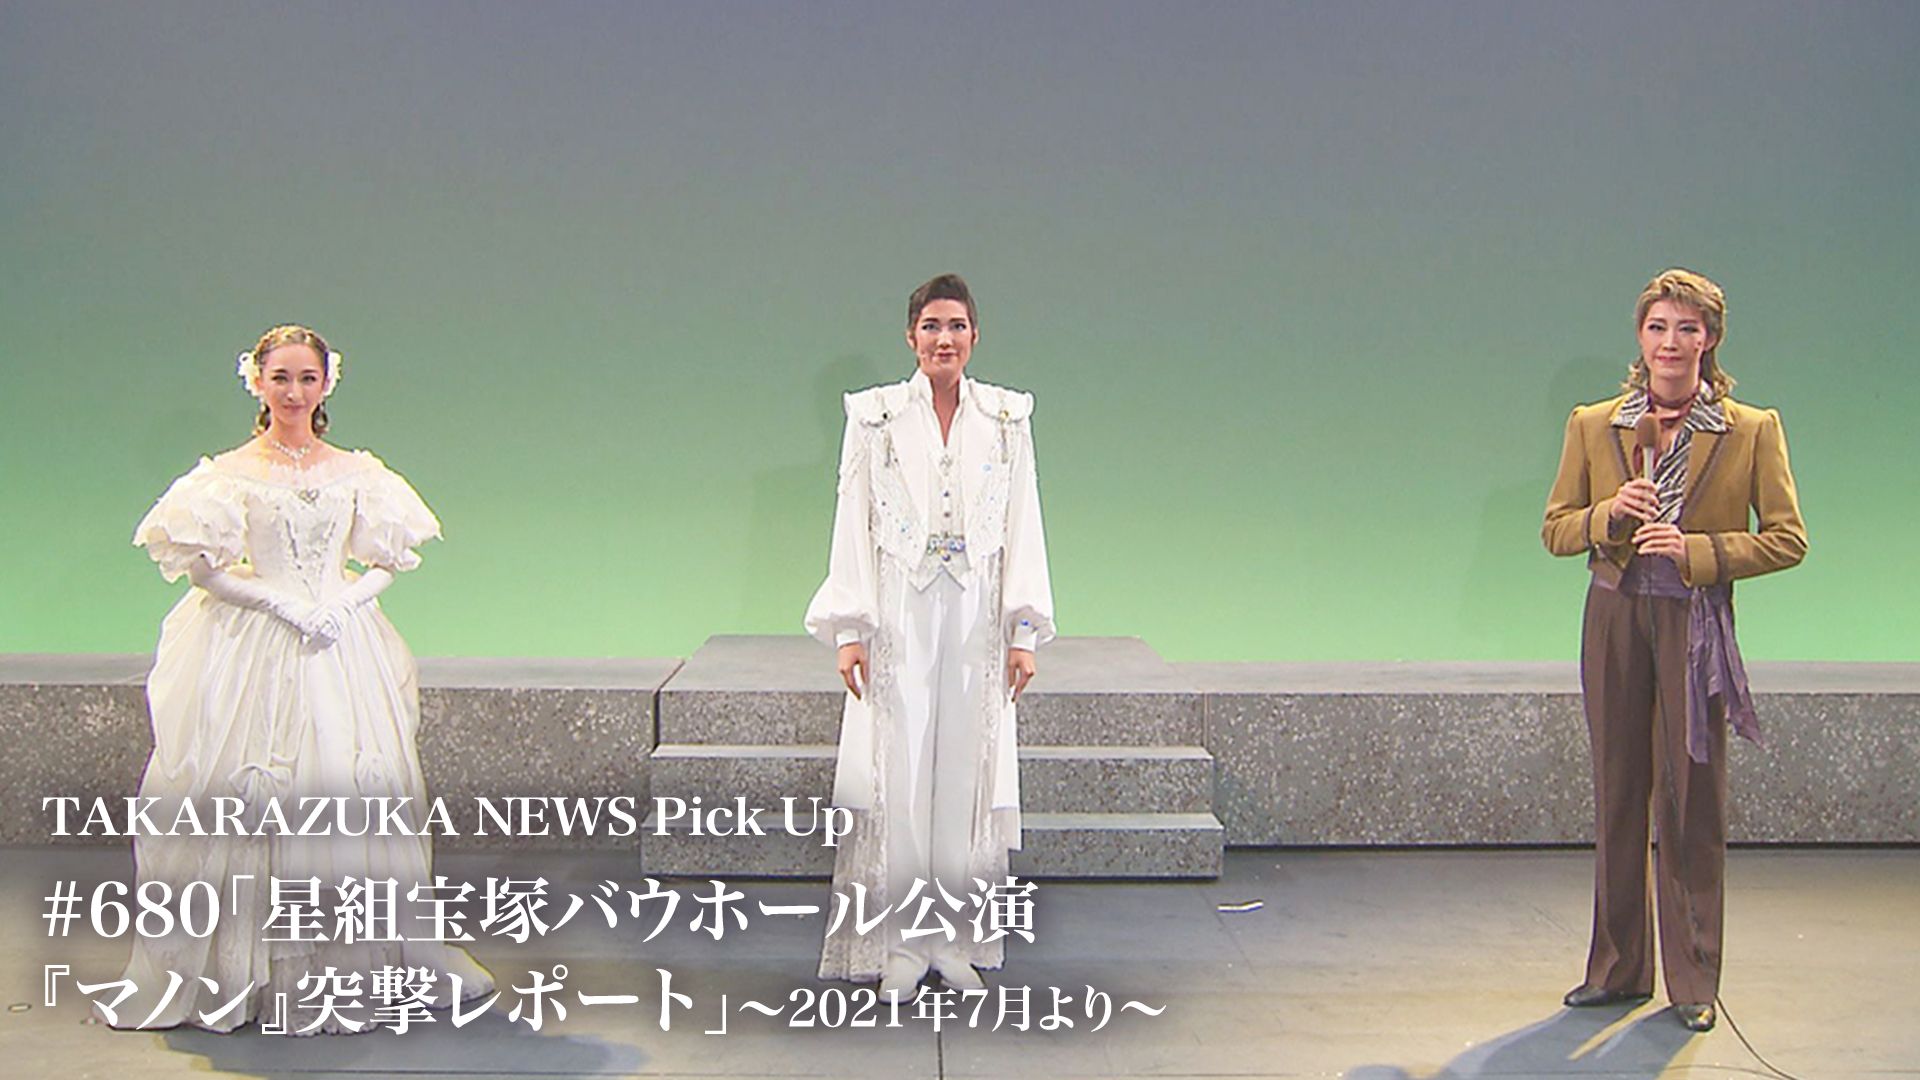 TAKARAZUKA NEWS Pick Up #680「星組宝塚バウホール公演『マノン』突撃レポート」